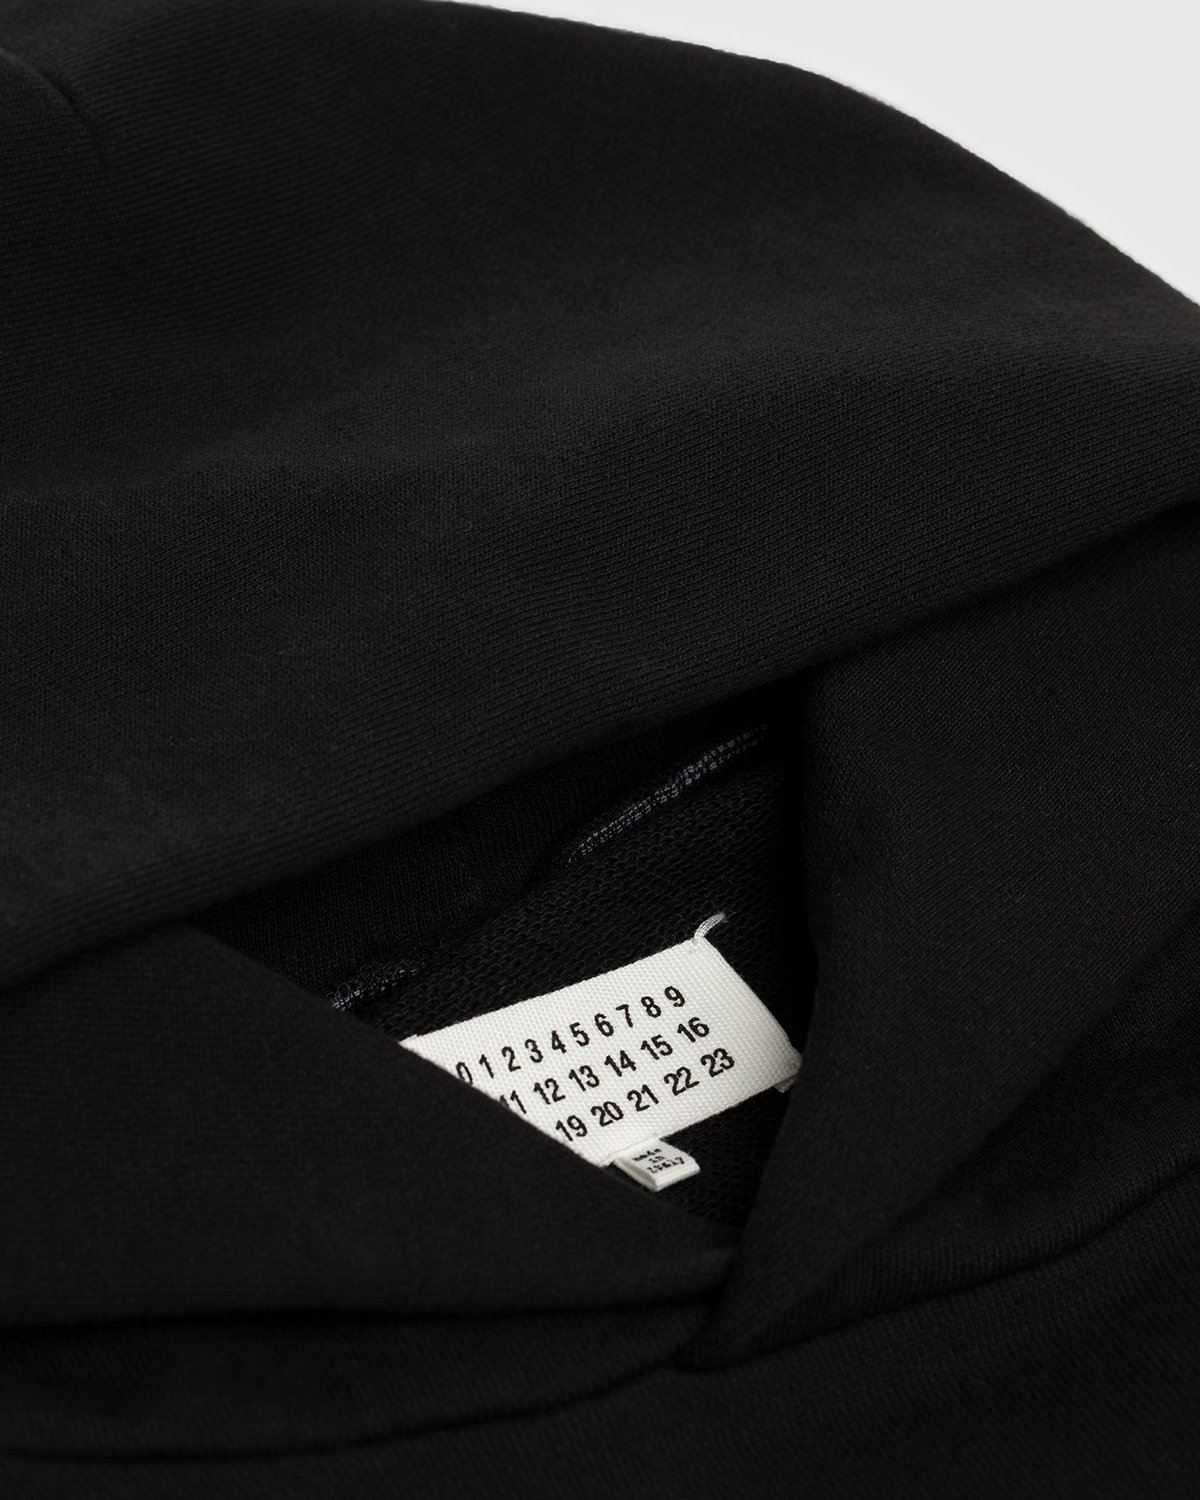 Maison Margiela - Hoodie Black - Clothing - Black - Image 6